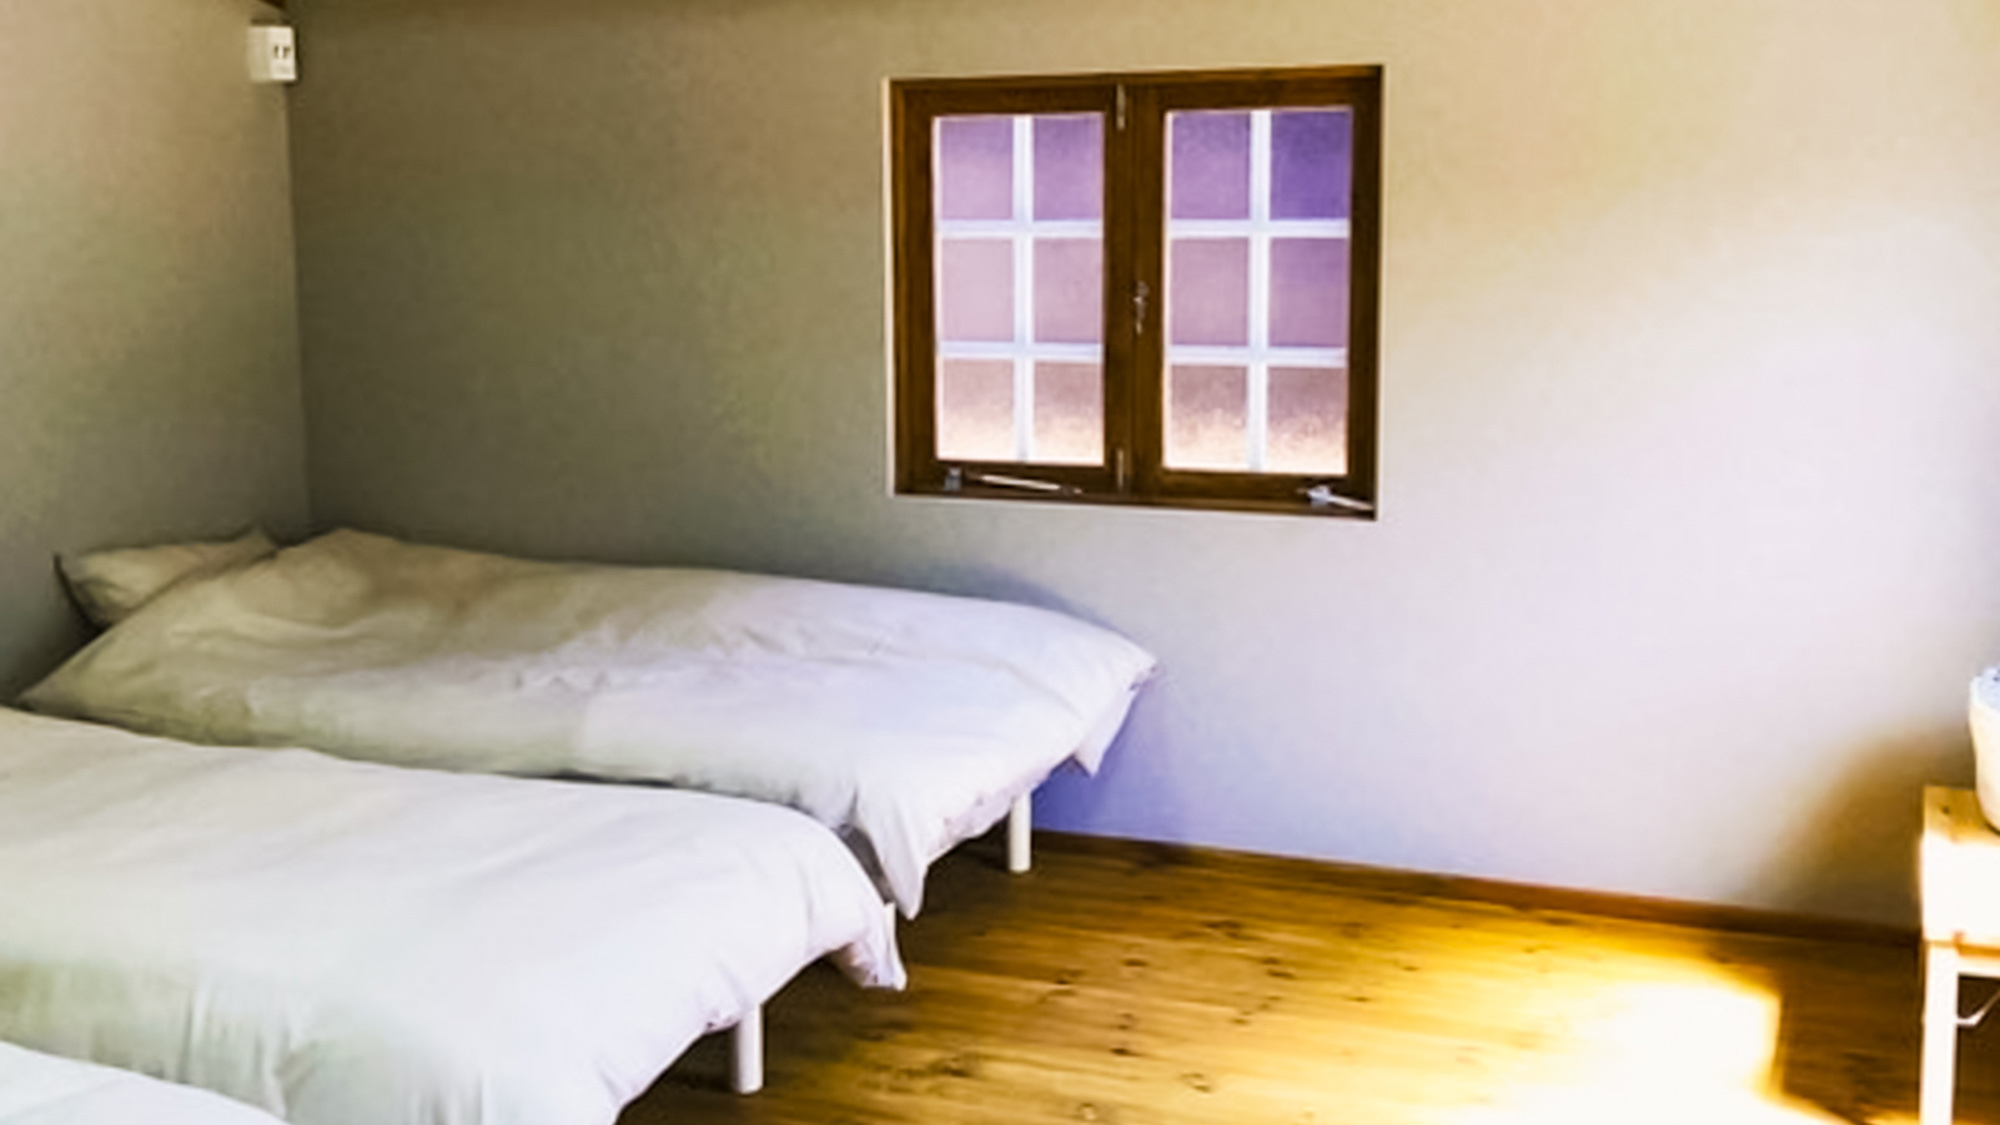 ・【客室一例】ファミリールームにはベッドを４台設置